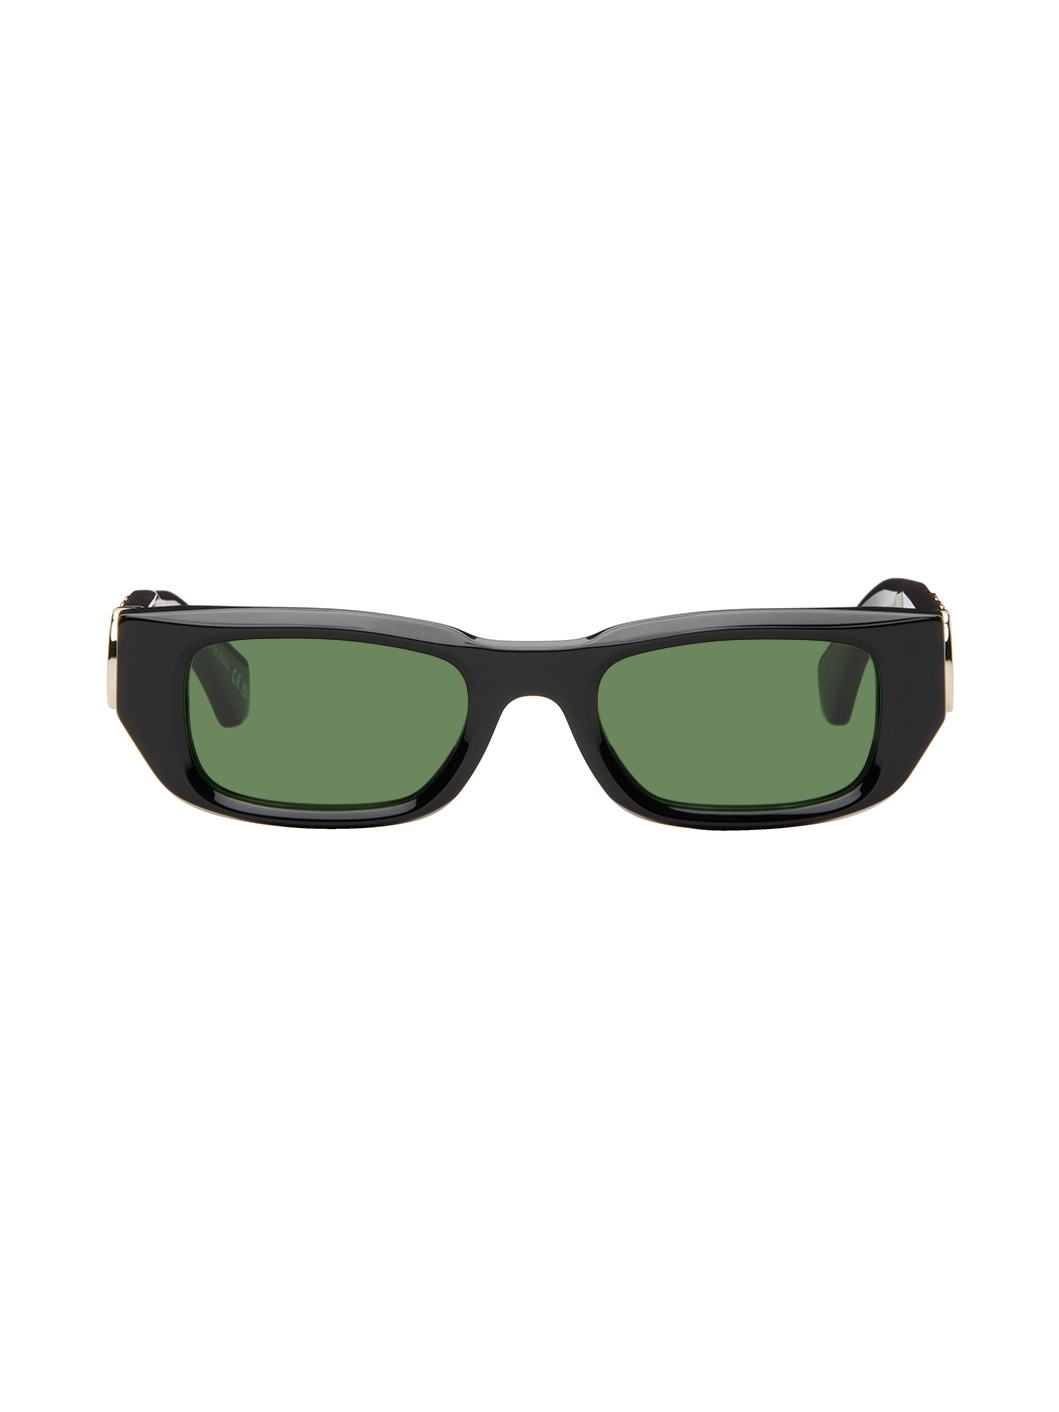 Black Fillmore Sunglasses - 1